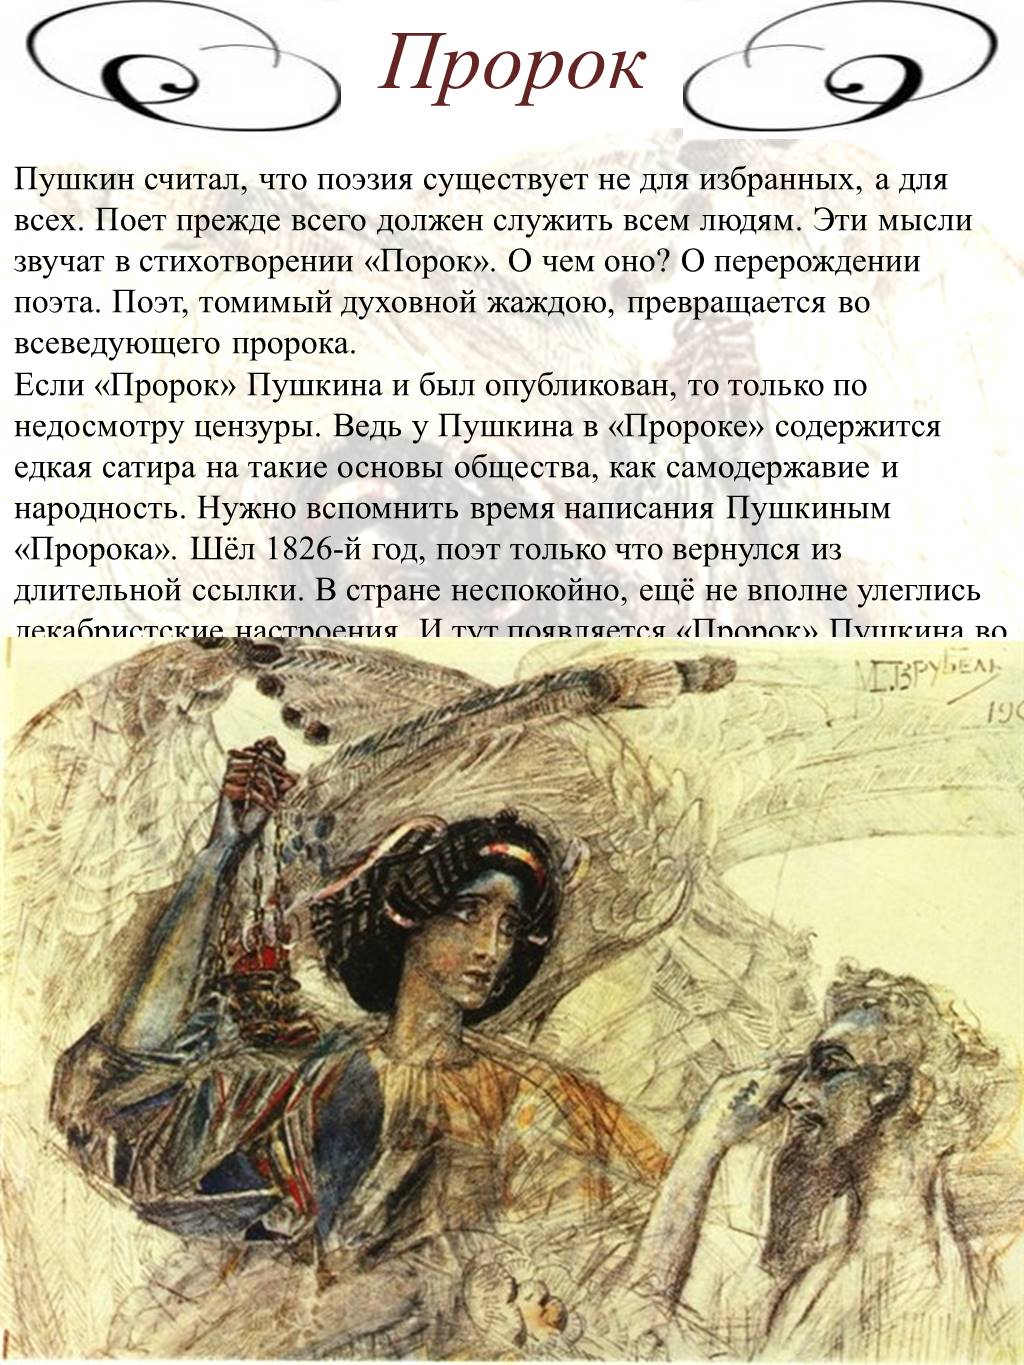 Пророк тема поэта и поэзии пророка. Пророк Пушкина. Пушкин "пророк" (1826 г.). А.Пушкина «пророк» 1826года.